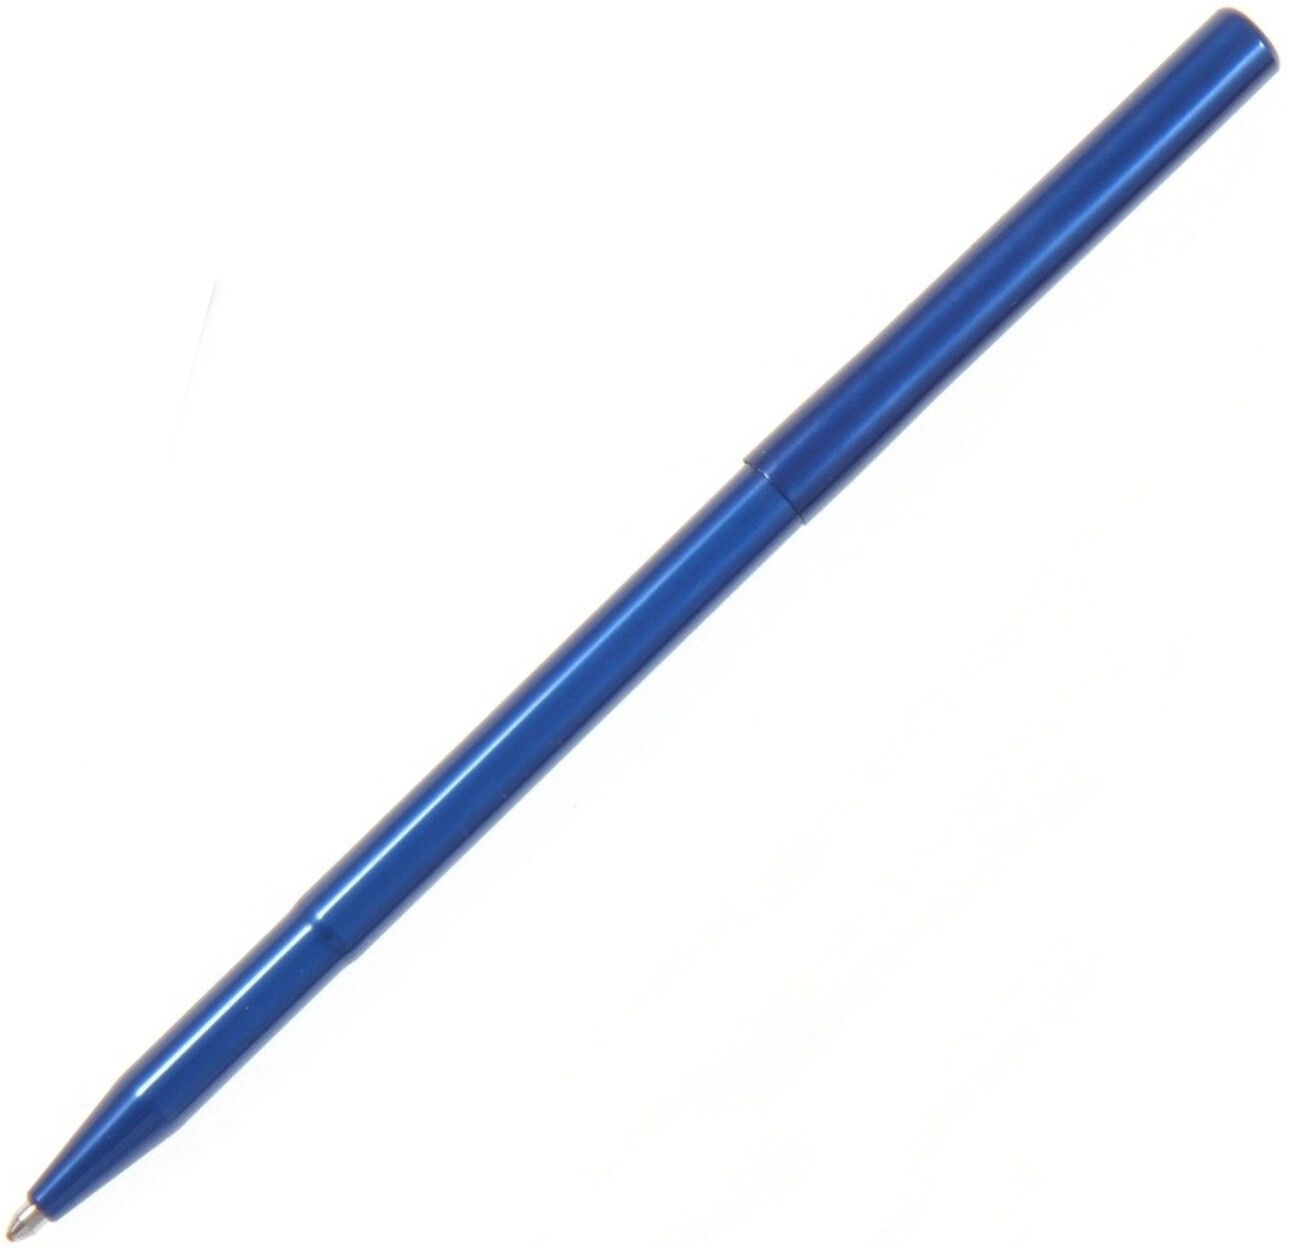 Fisher Space Pen - Stowaway Ballpoint Pen - Blue Anodized Aluminum SWY-BLUE